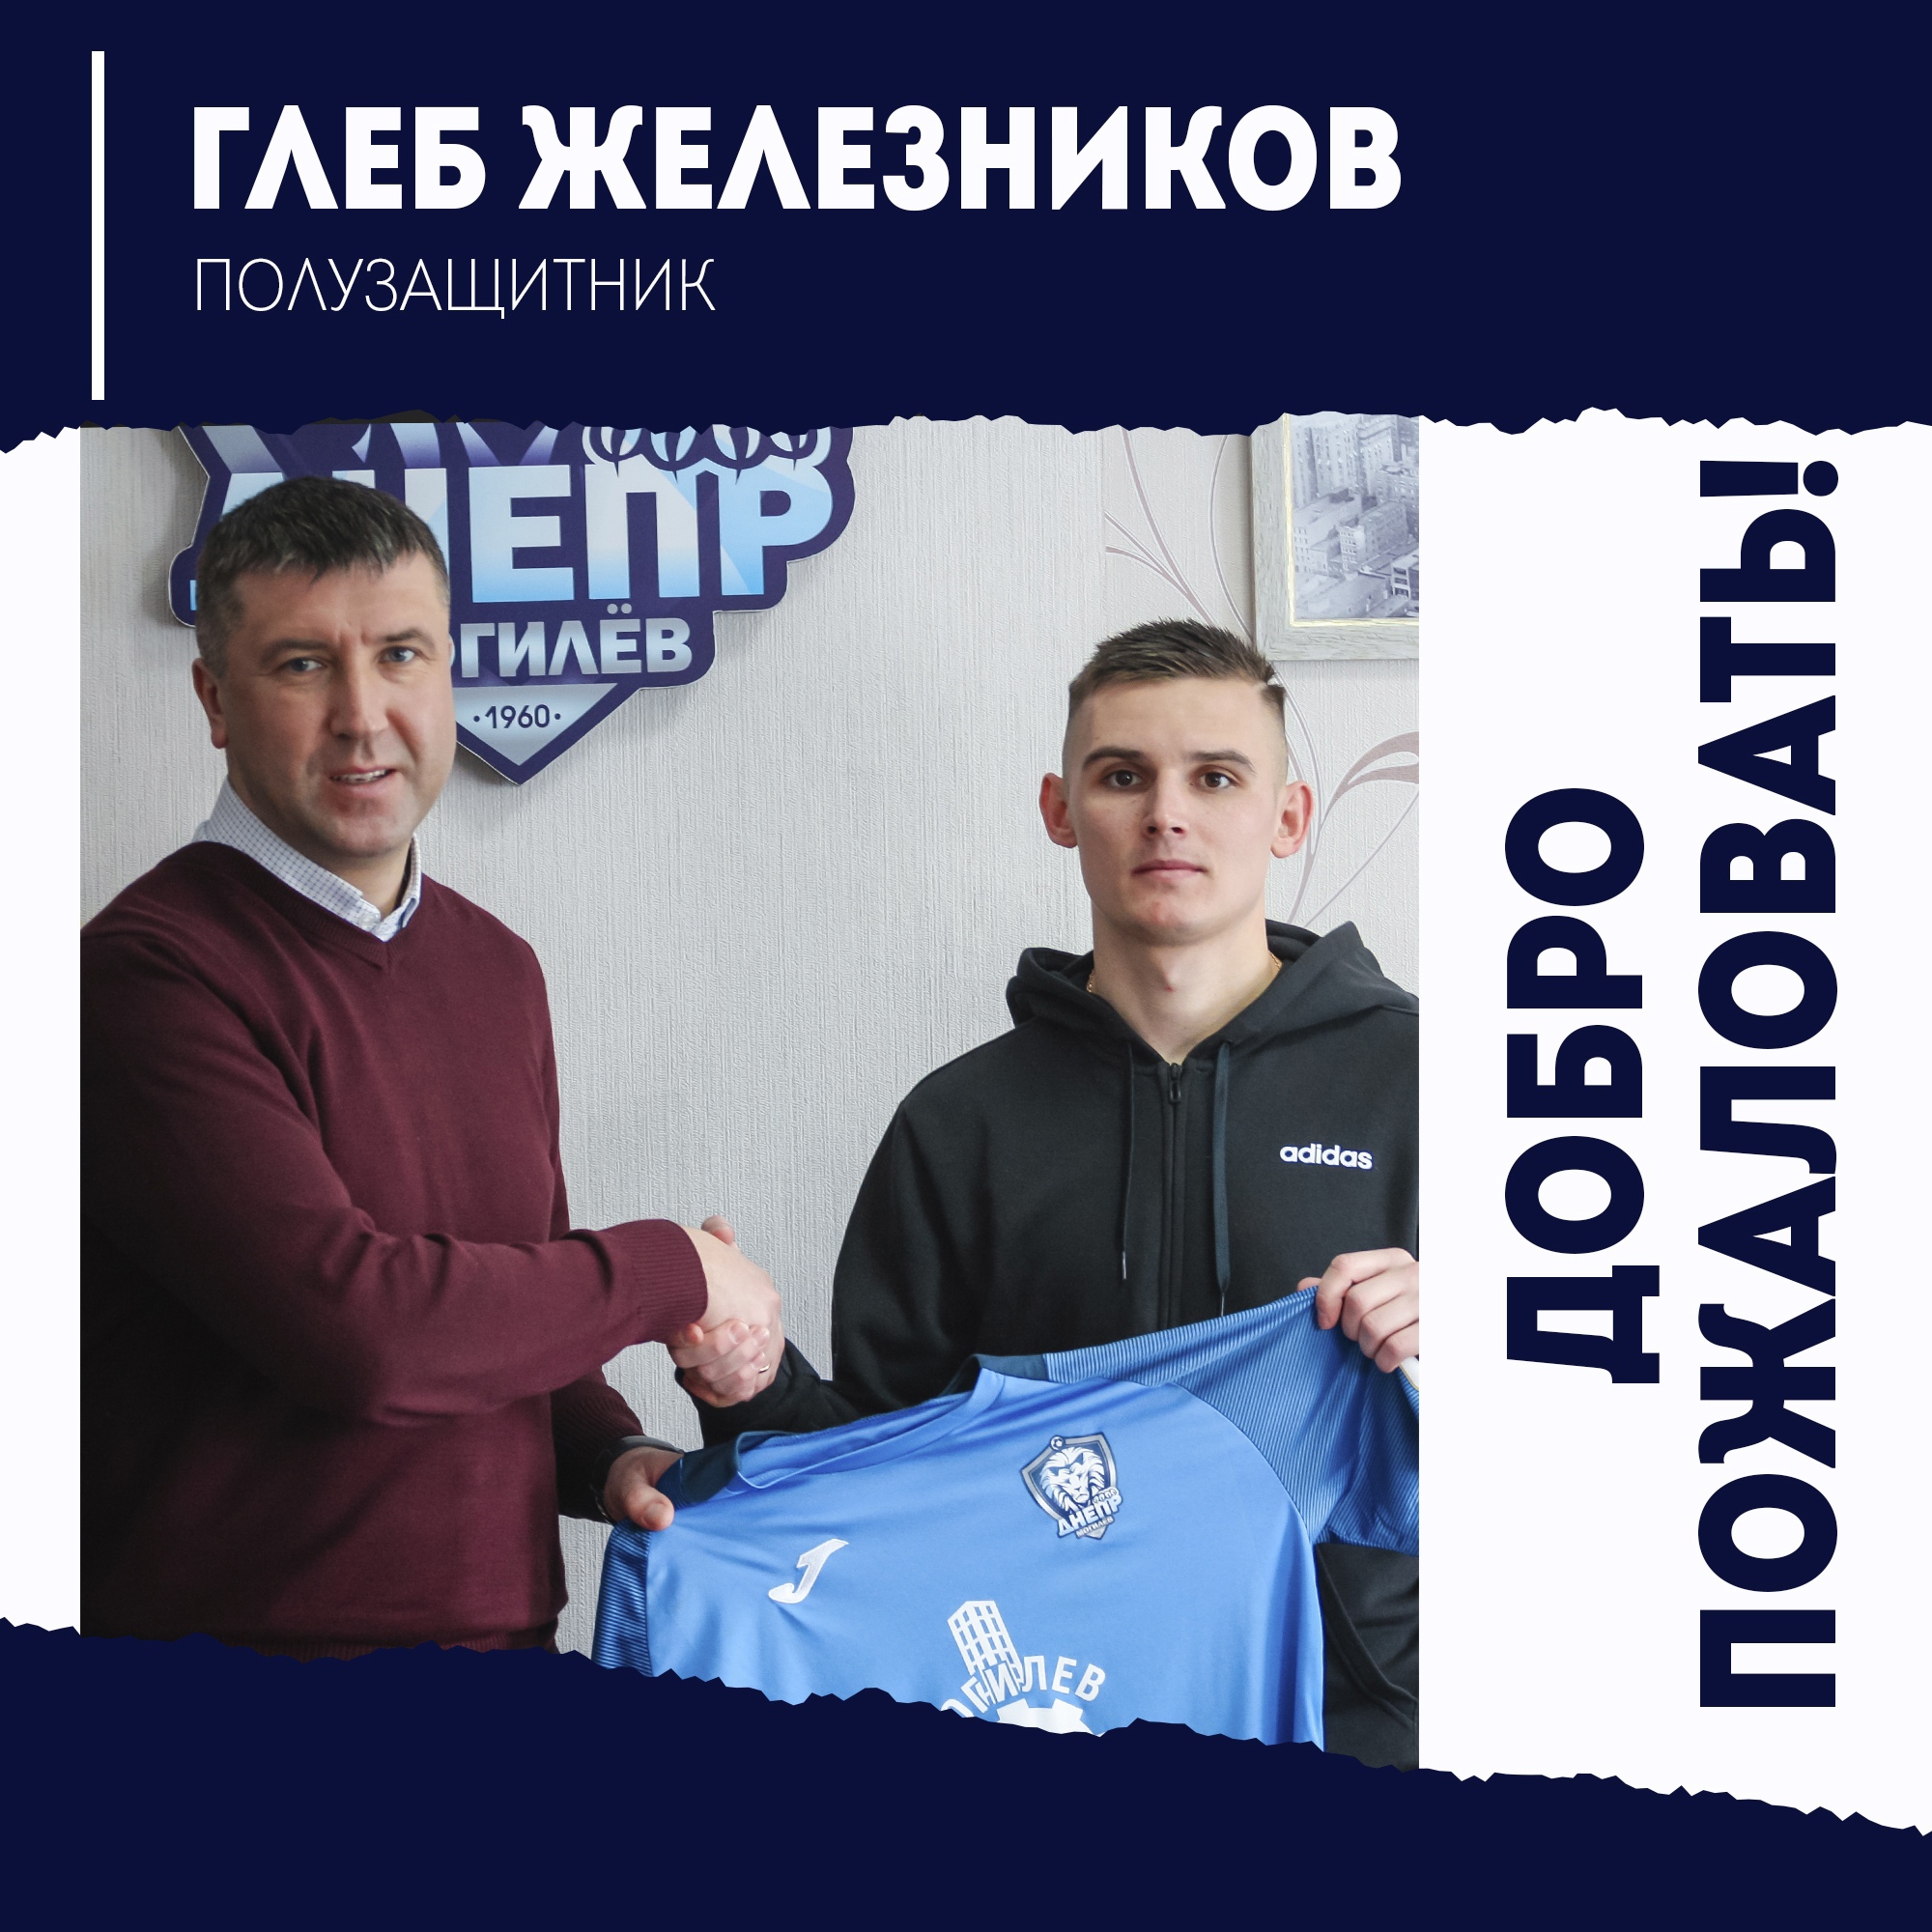 Глеб Железников стал футболистом Днепра